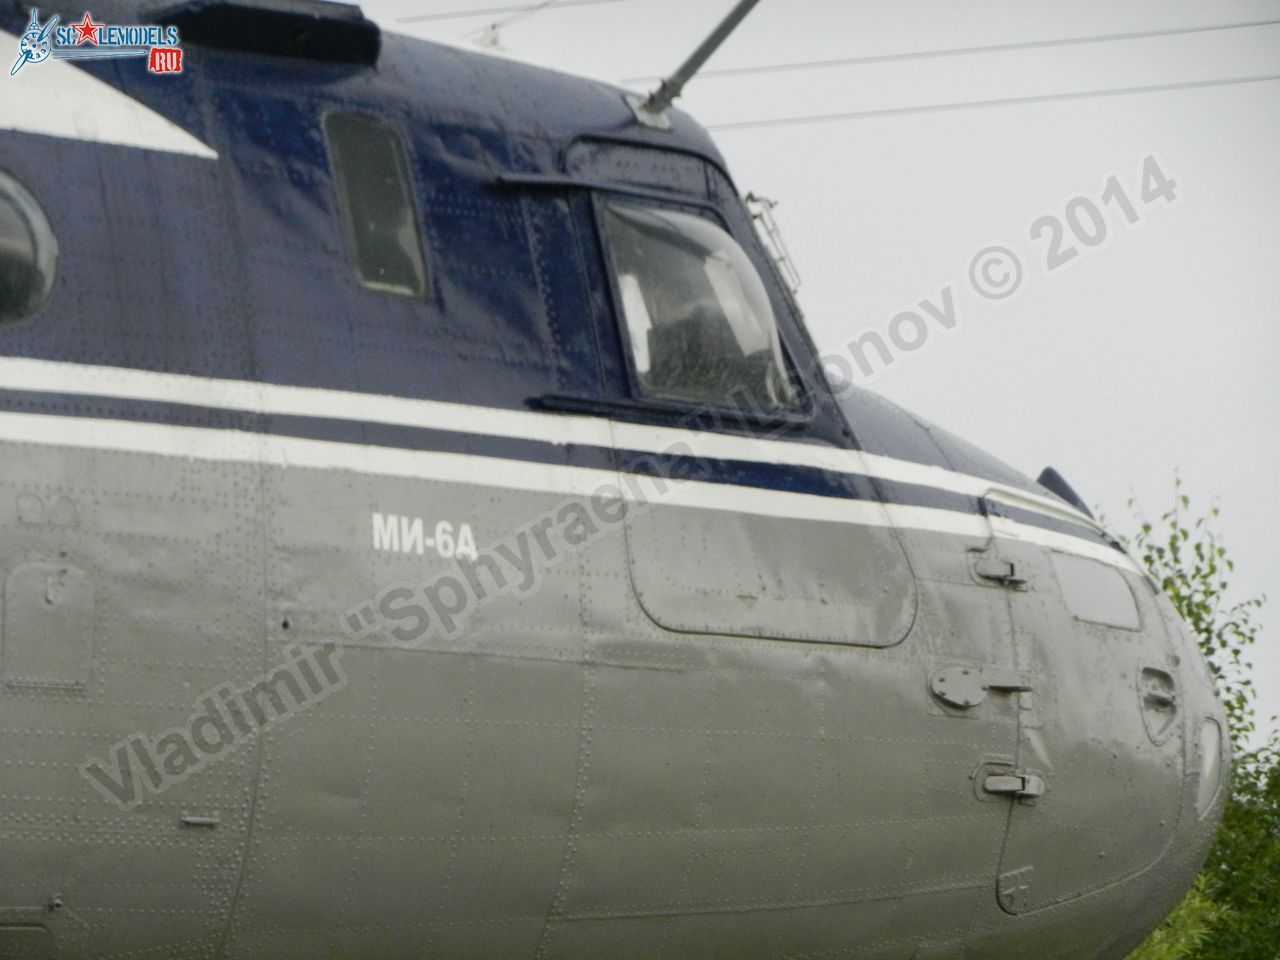 Mi-6_RA-21075_0018.jpg